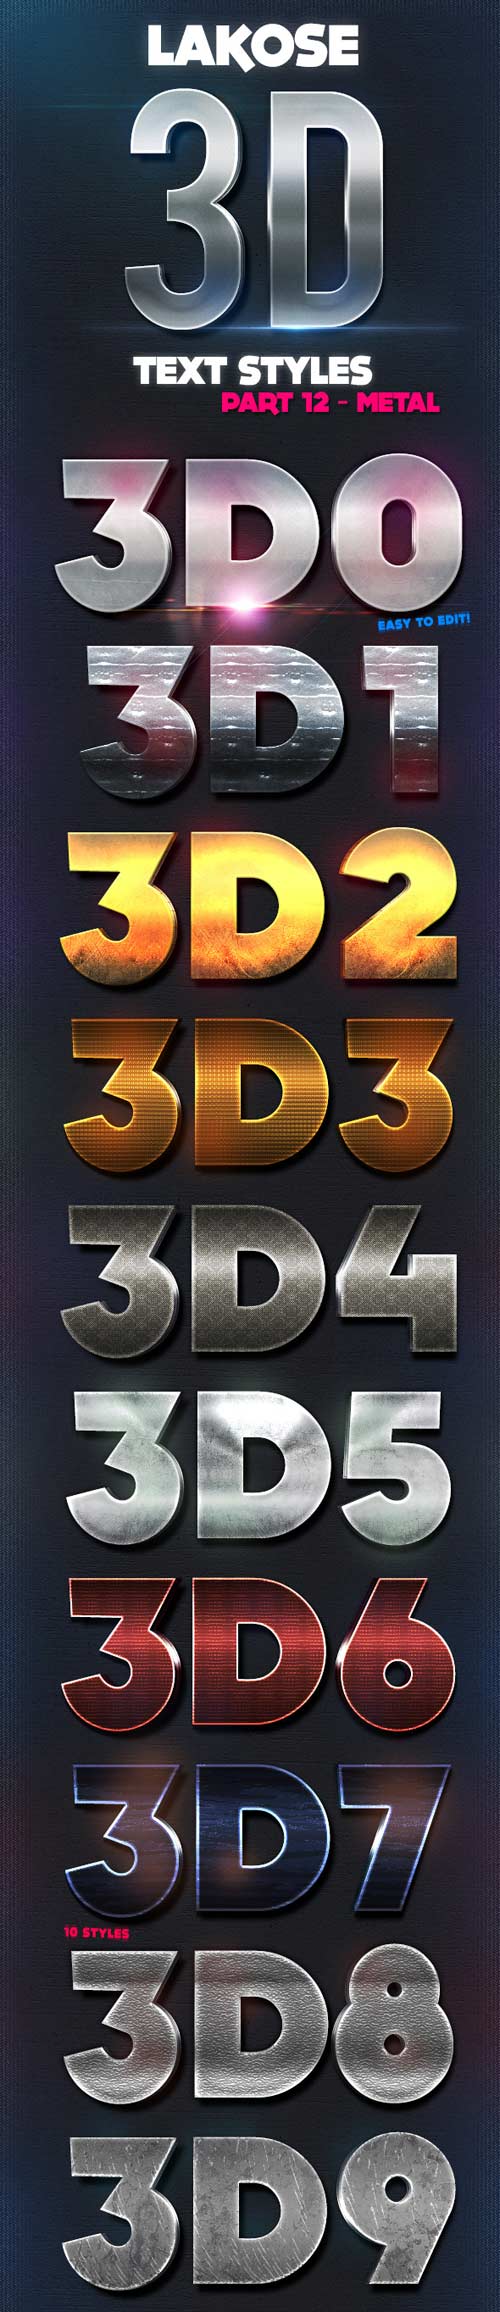  Lakose 3D Text Styles Part 12 9357483